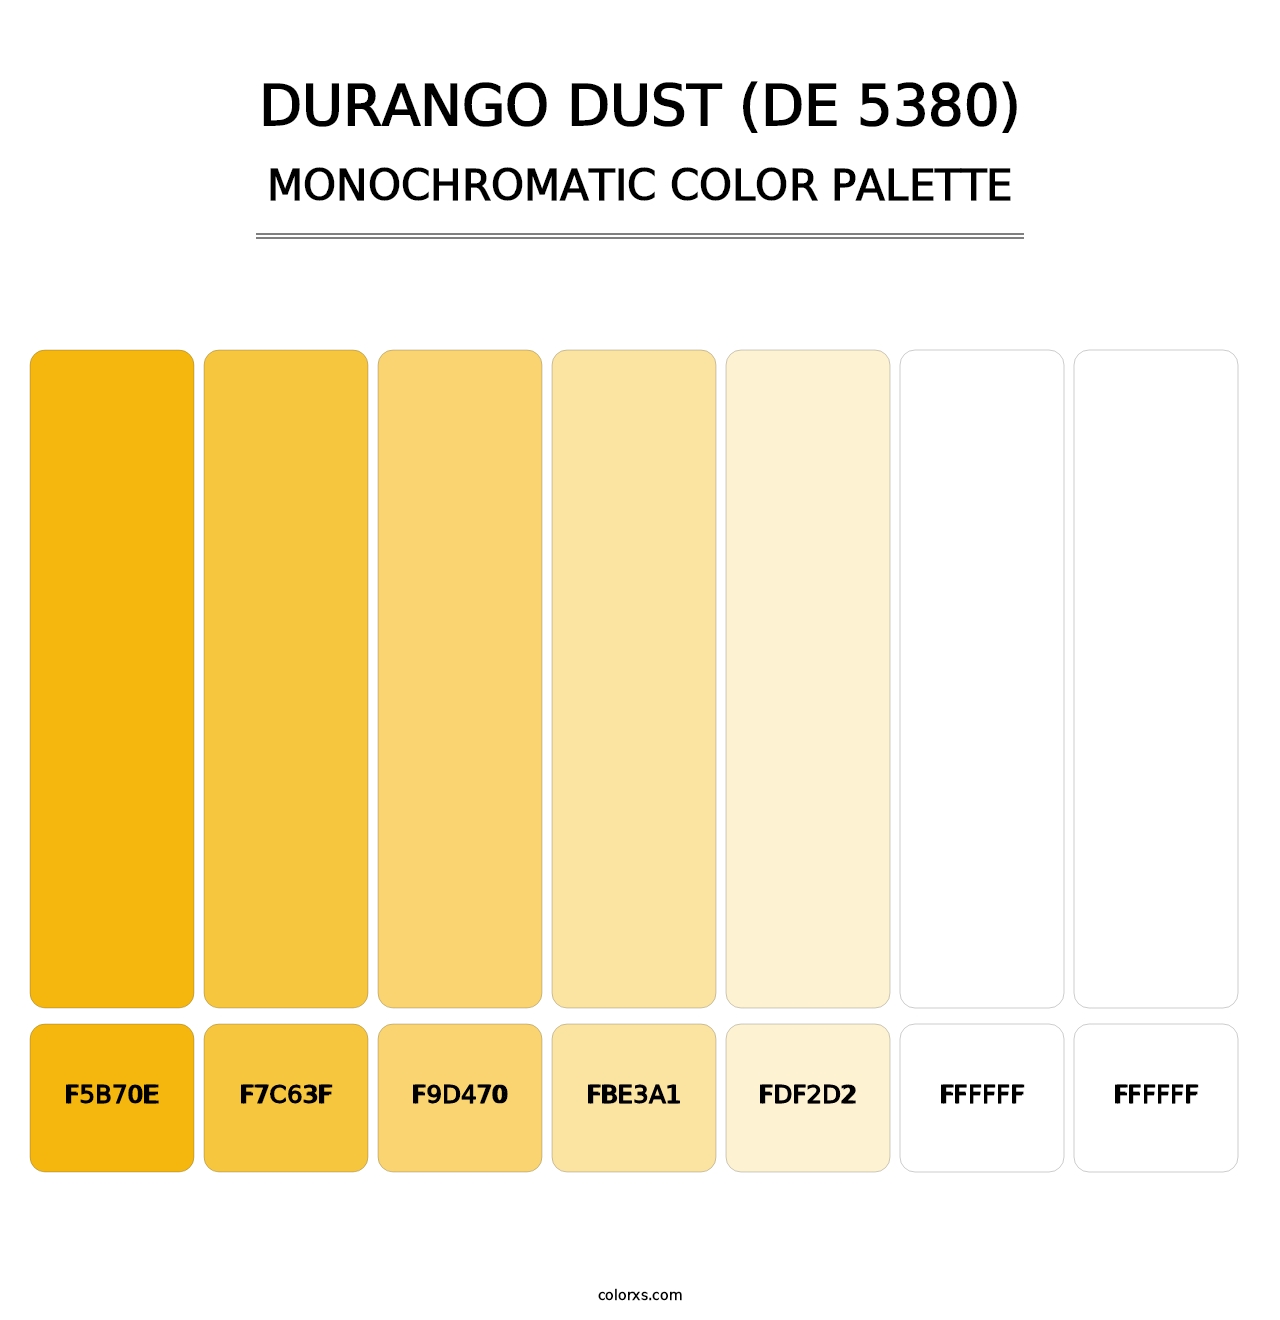 Durango Dust (DE 5380) - Monochromatic Color Palette